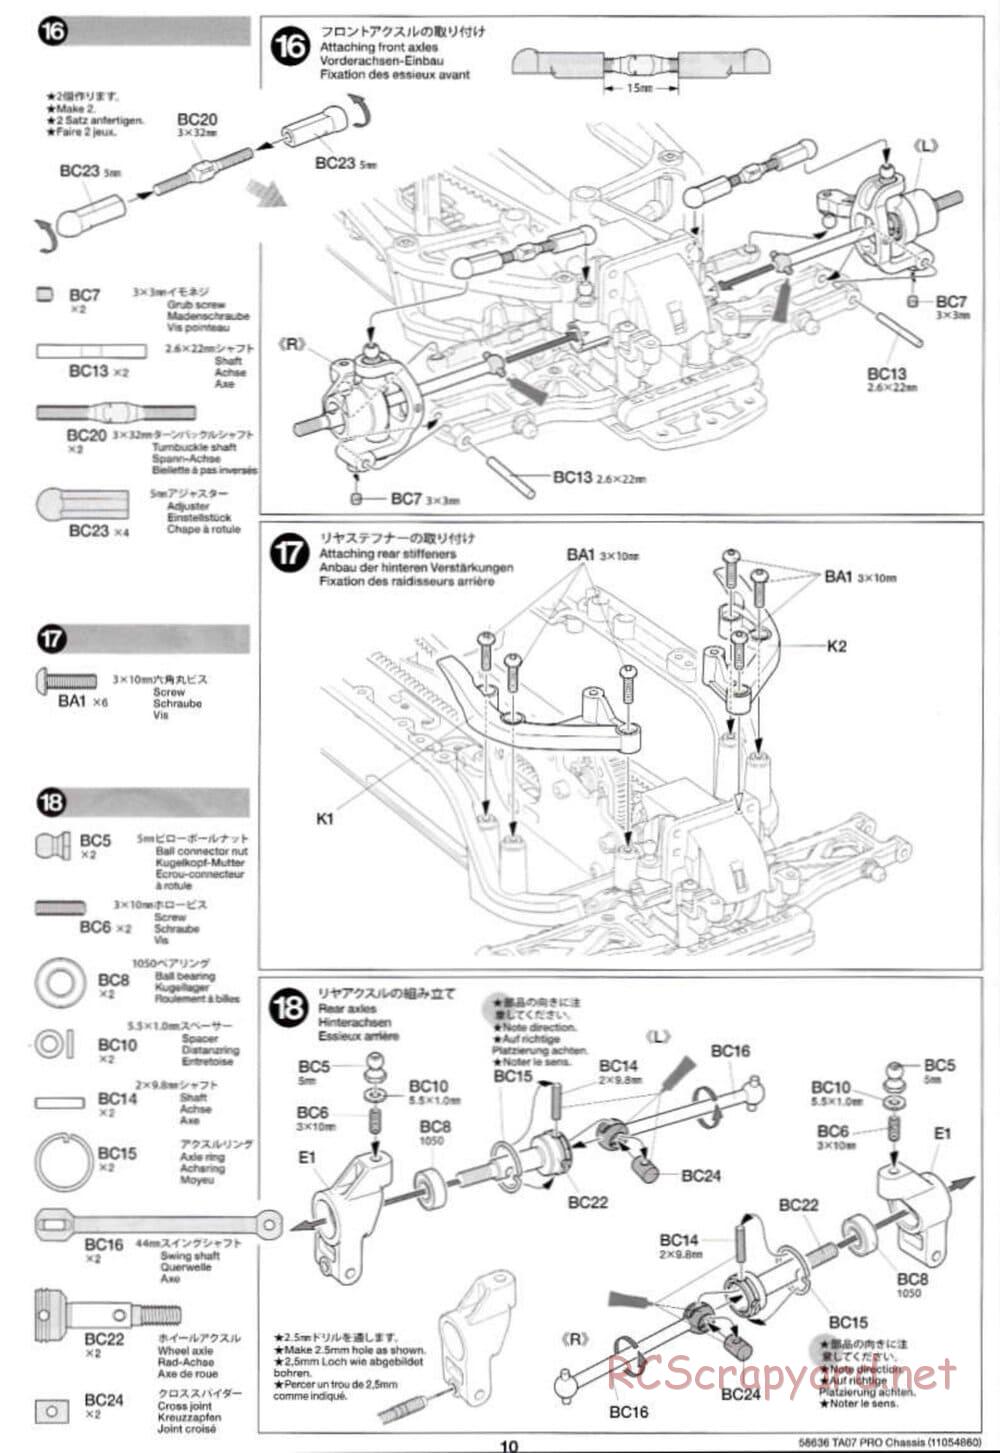 Tamiya - TA07 Pro Chassis - Manual - Page 10